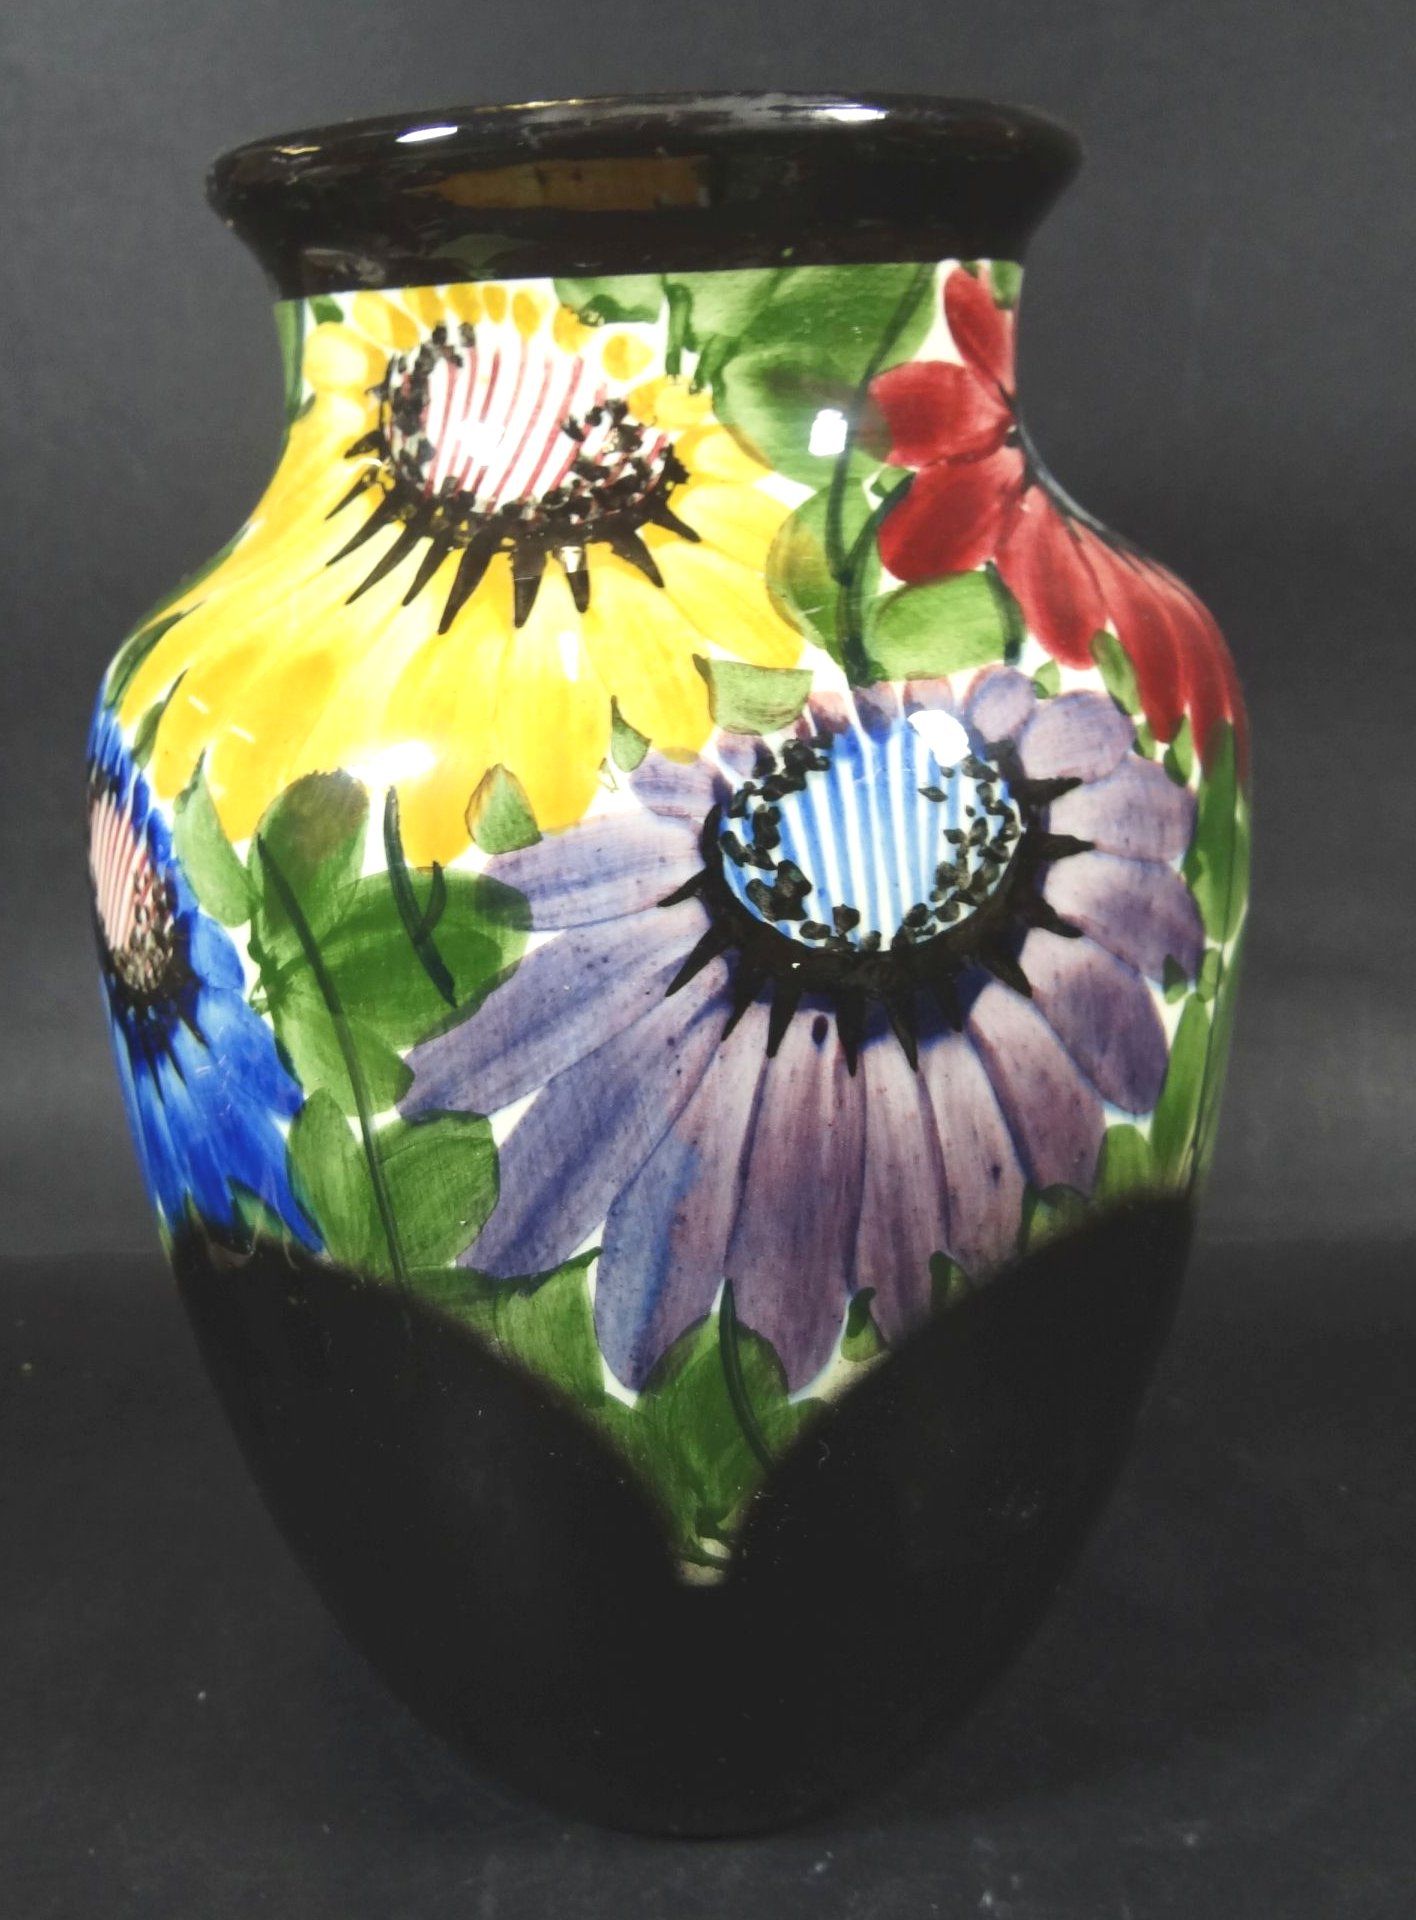 gr. Vase mit Blumenmalerei "Elmshorn" Handmalerei, H-23 cm- - -22.61 % buyer's premium on the hammer